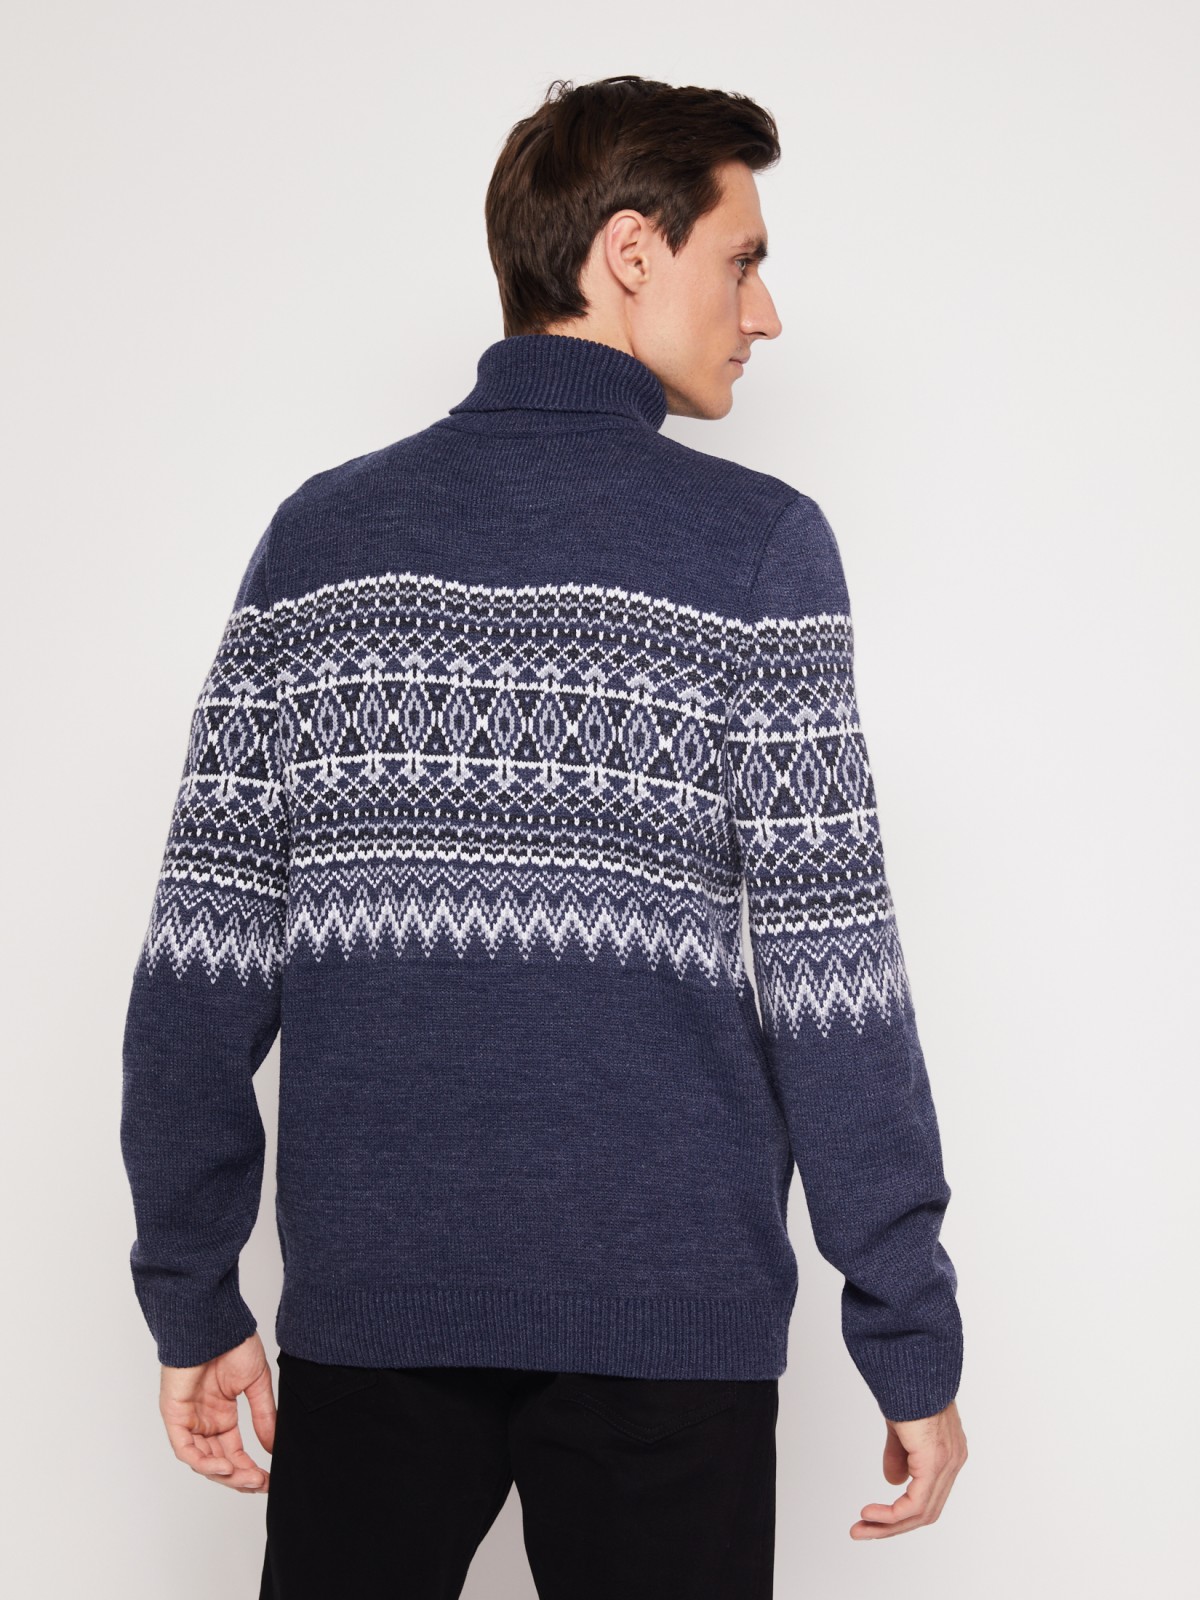 Вязаный свитер с узором zolla 011436143503, цвет голубой, размер S - фото 3